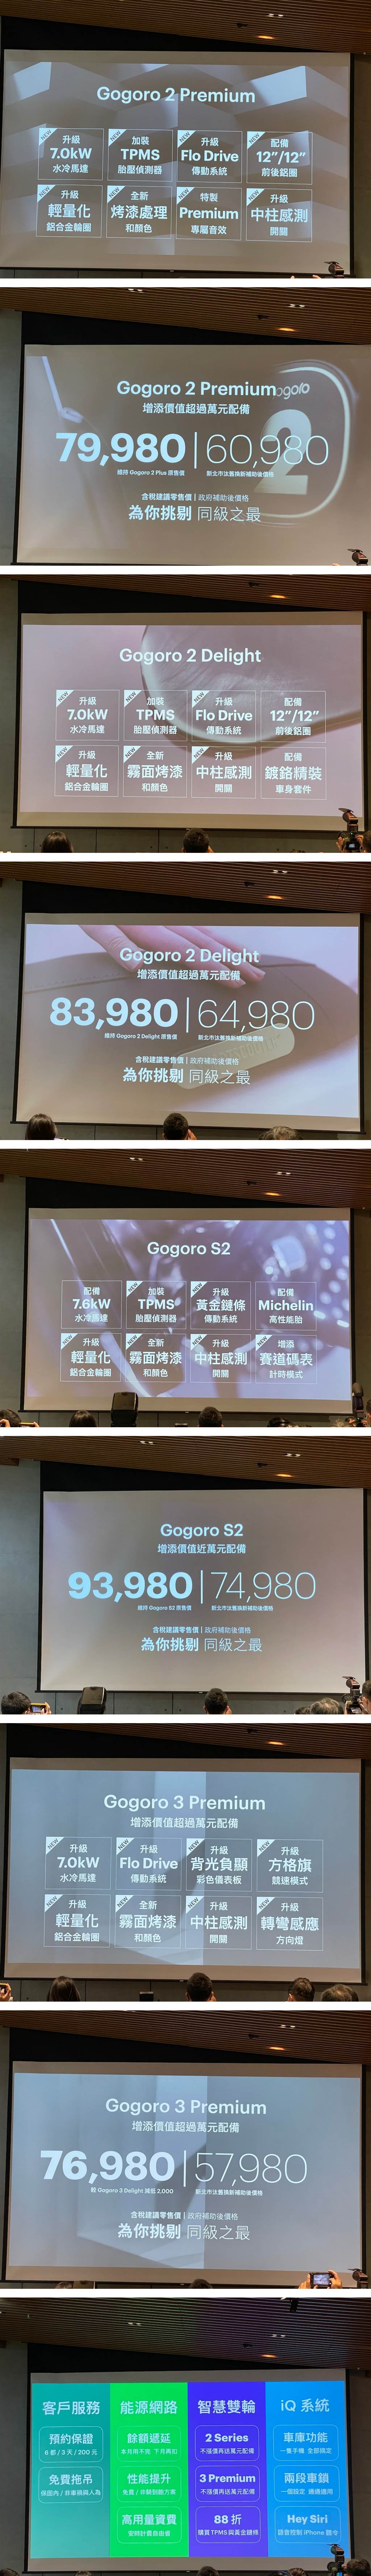 Gogoro 2/3 等多種車款全方位升級「加值不加價」，售後服務與資費也全面升級!
